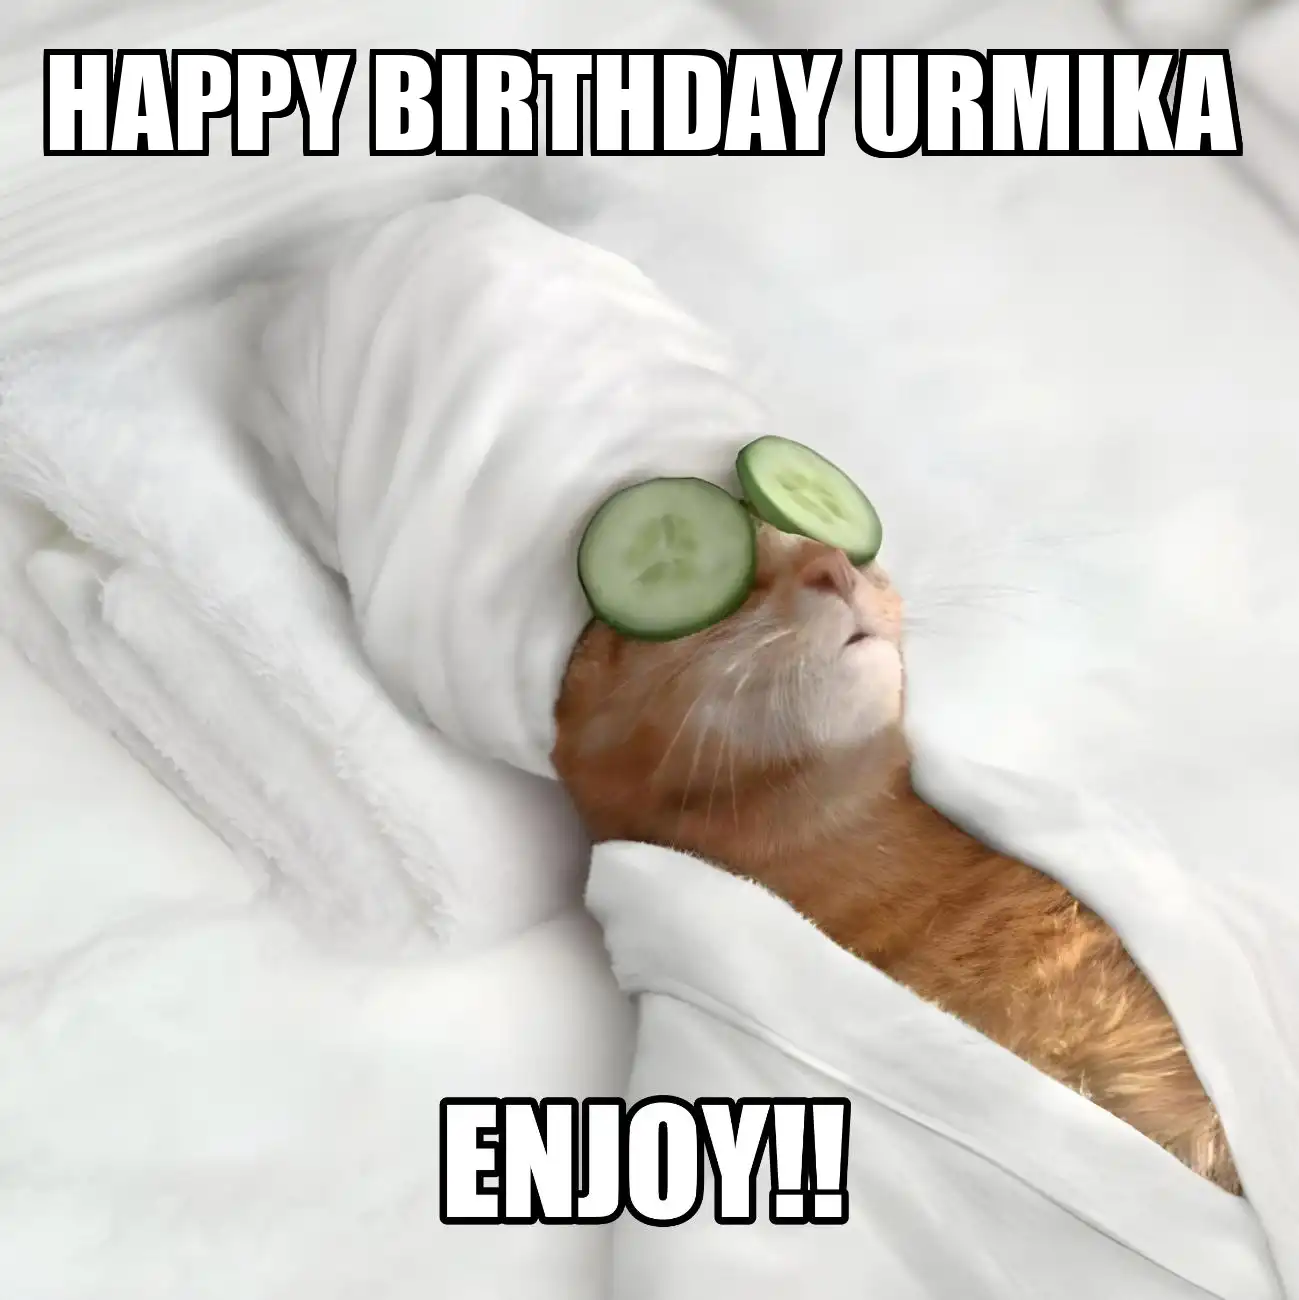 Happy Birthday Urmika Enjoy Cat Meme